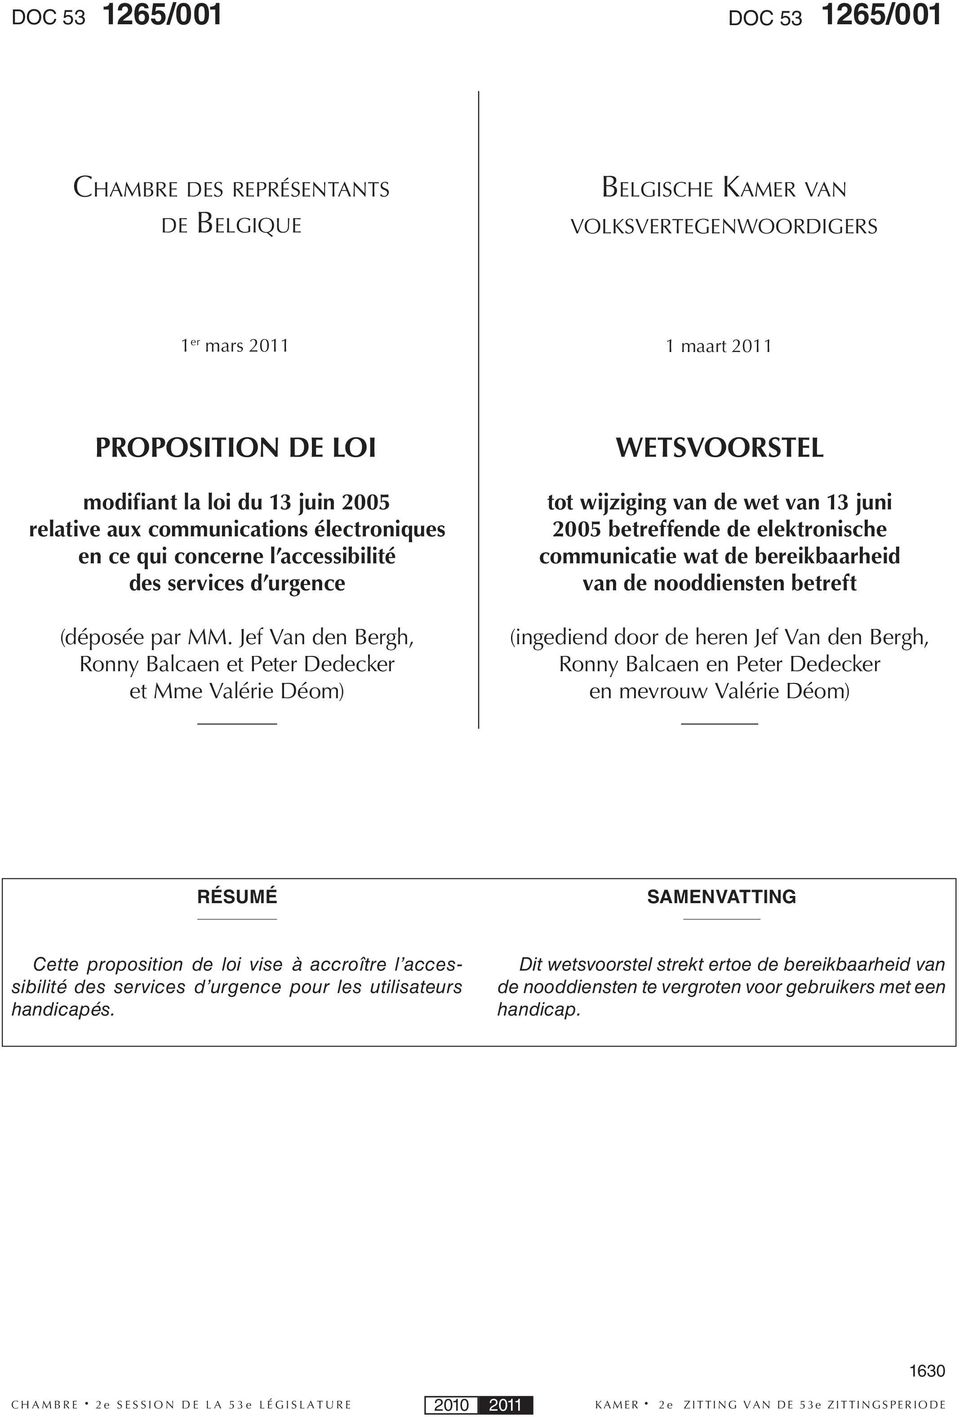 Jef Van den Bergh, Ronny Balcaen et Peter Dedecker et Mme Valérie Déom) WETSVOORSTEL tot wijziging van de wet van 13 juni 2005 betreffende de elektronische communicatie wat de bereikbaarheid van de